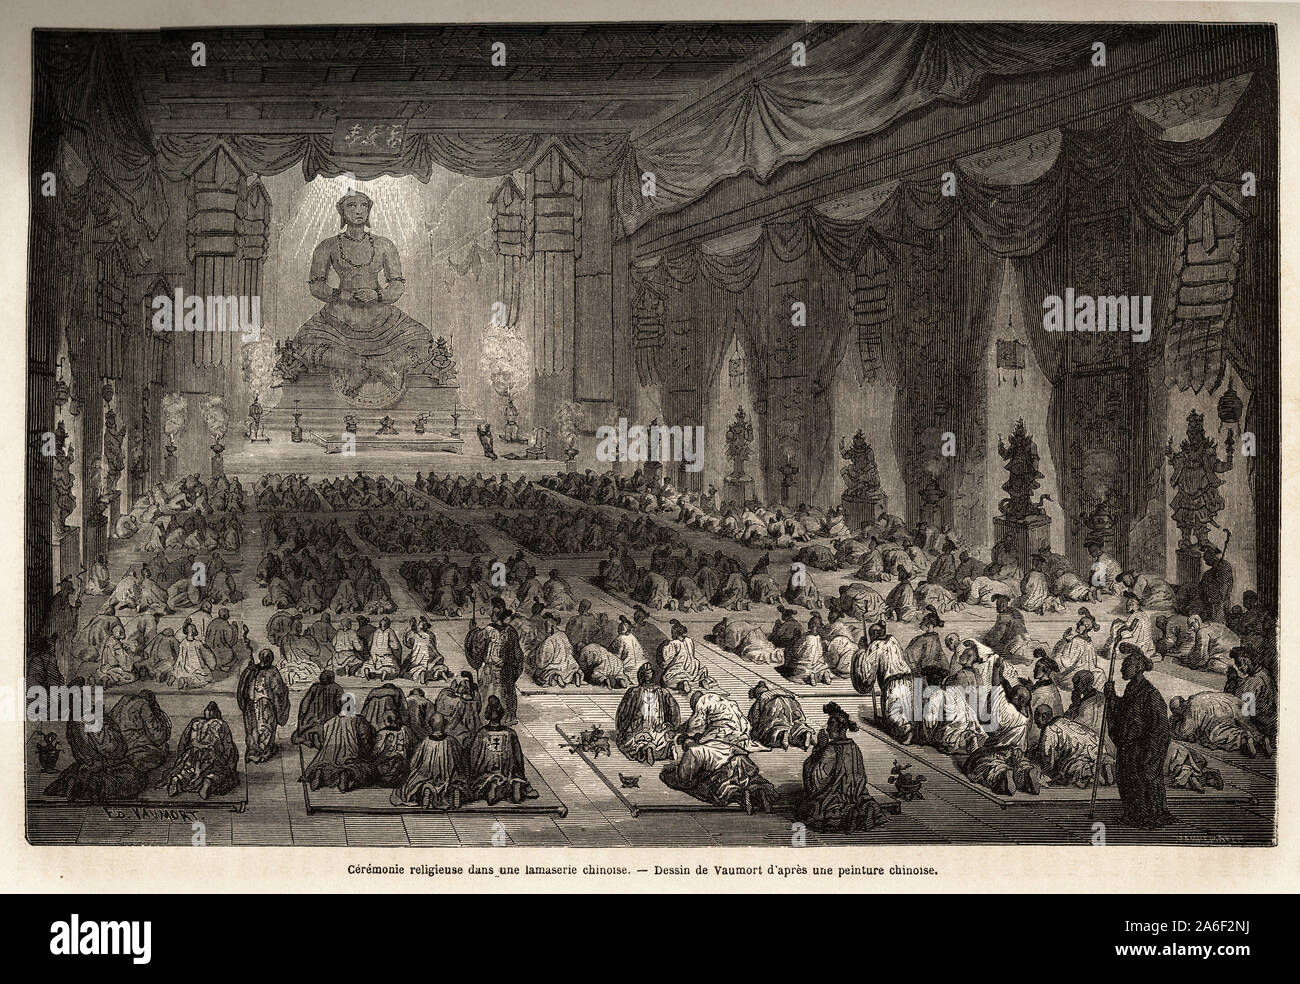 Ceremonie religieuse dans une lamasserie chinoise, dessin de Vaumort ( ?-1886), pour illustrer le voyage de Shangai a Moscou, de 1859 a 1862, de M. de Stock Photo